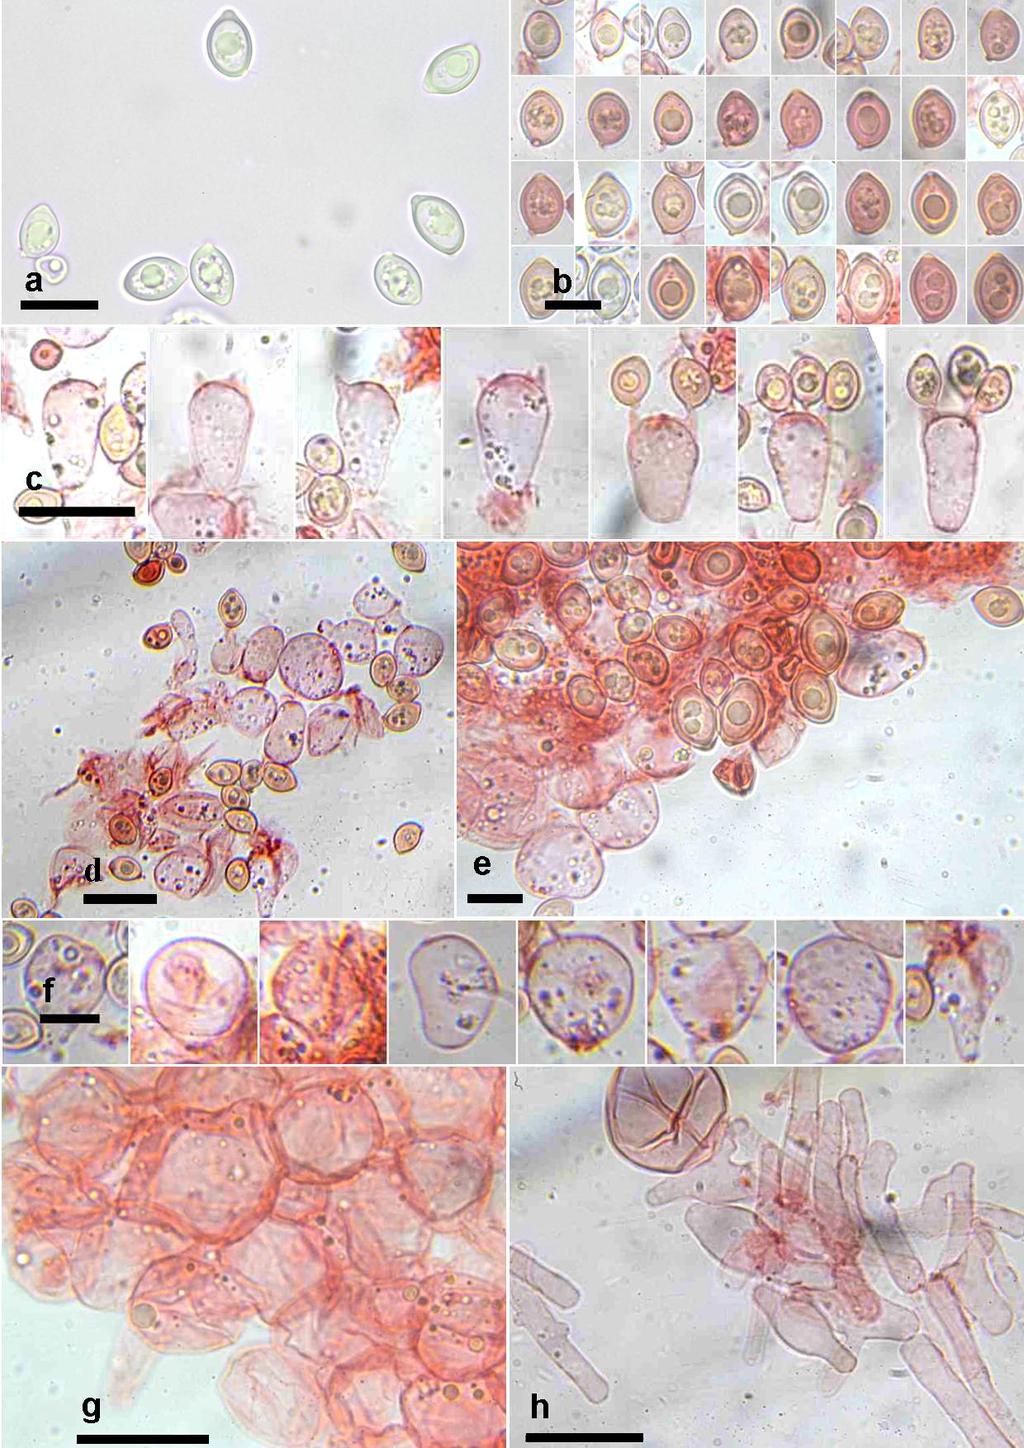 FIGURA 2. Caracteres microscópicos. a, b. Esporas. c. Basidios. d, e, f. Pseudoparáfisis. g. Pileipellis, elementos terminales. h. Hifas pileipellis.